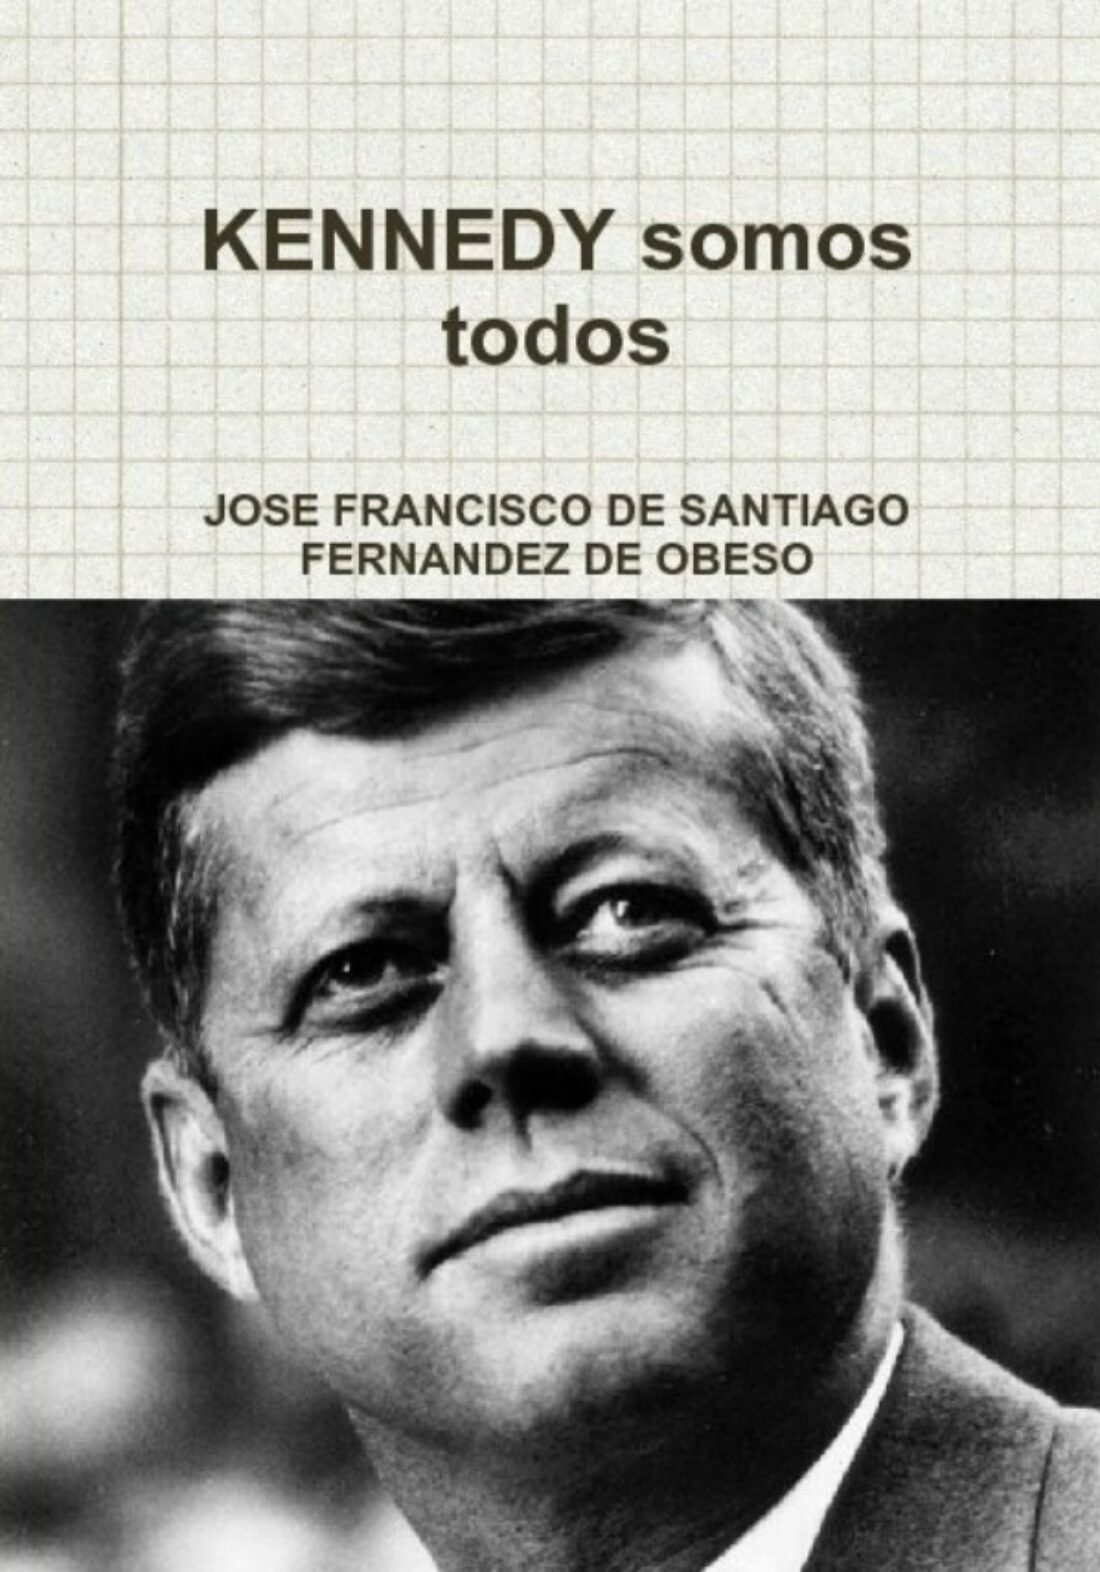 Kennedy somos todos, de José Francisco de Santiago Fdez de Obeso